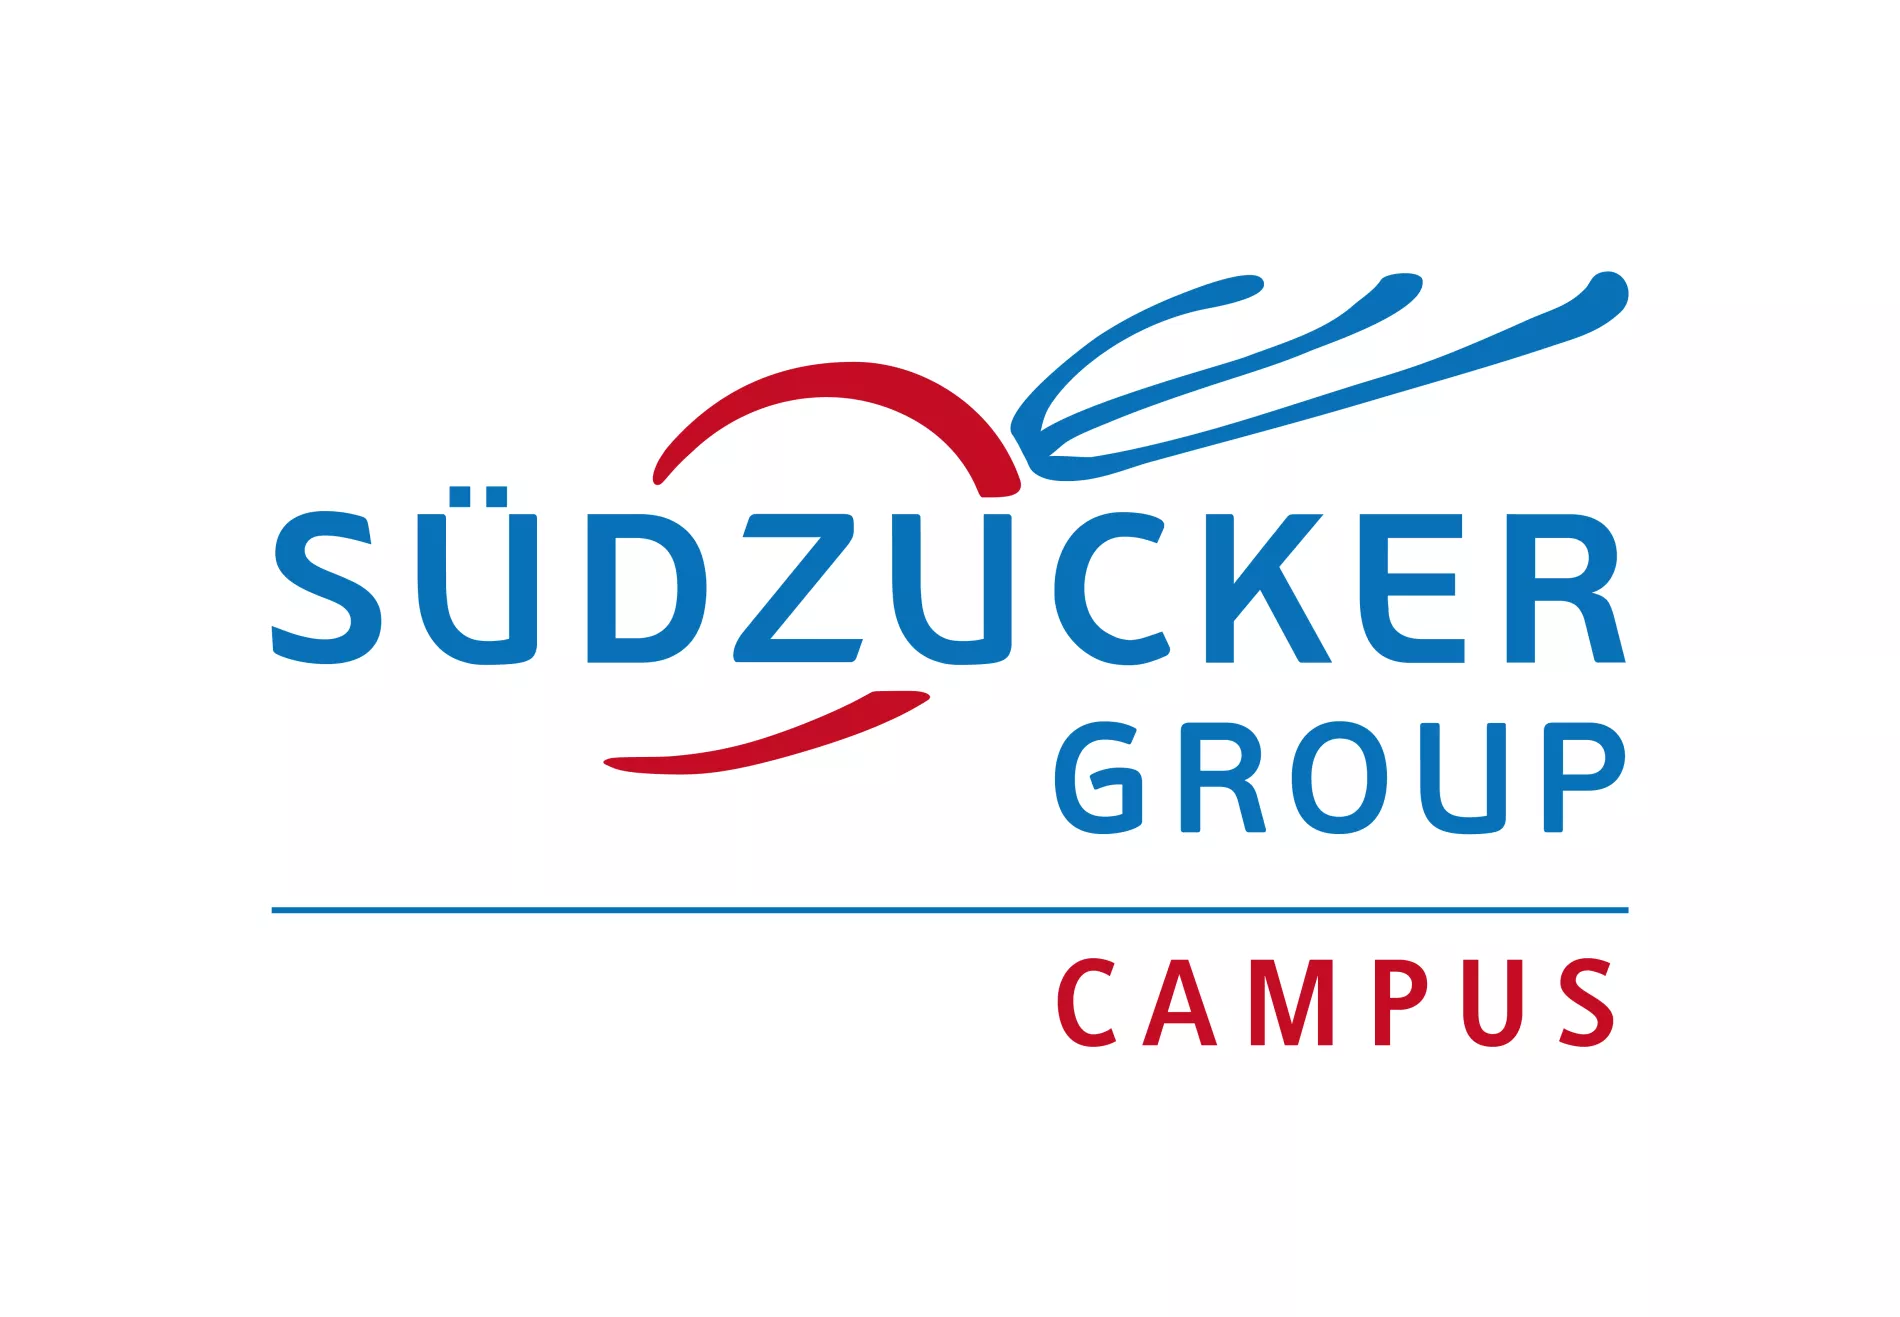 Südzucker Group Campus